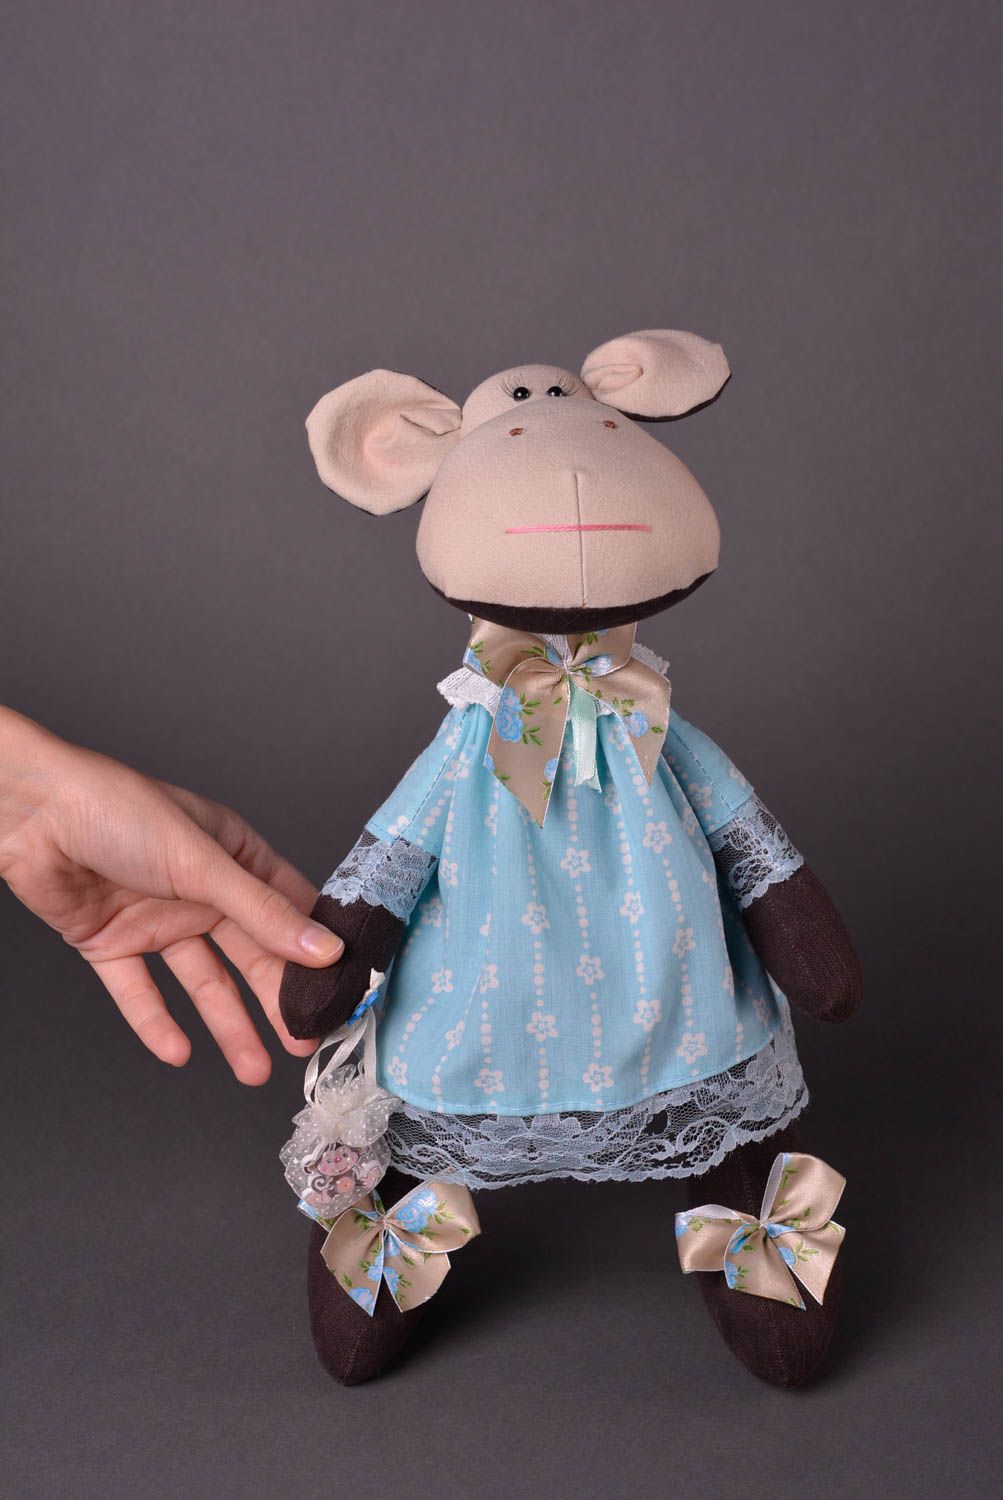 Игрушка обезьянка ручной работы авторская игрушка из ткани стильный подарок фото 1